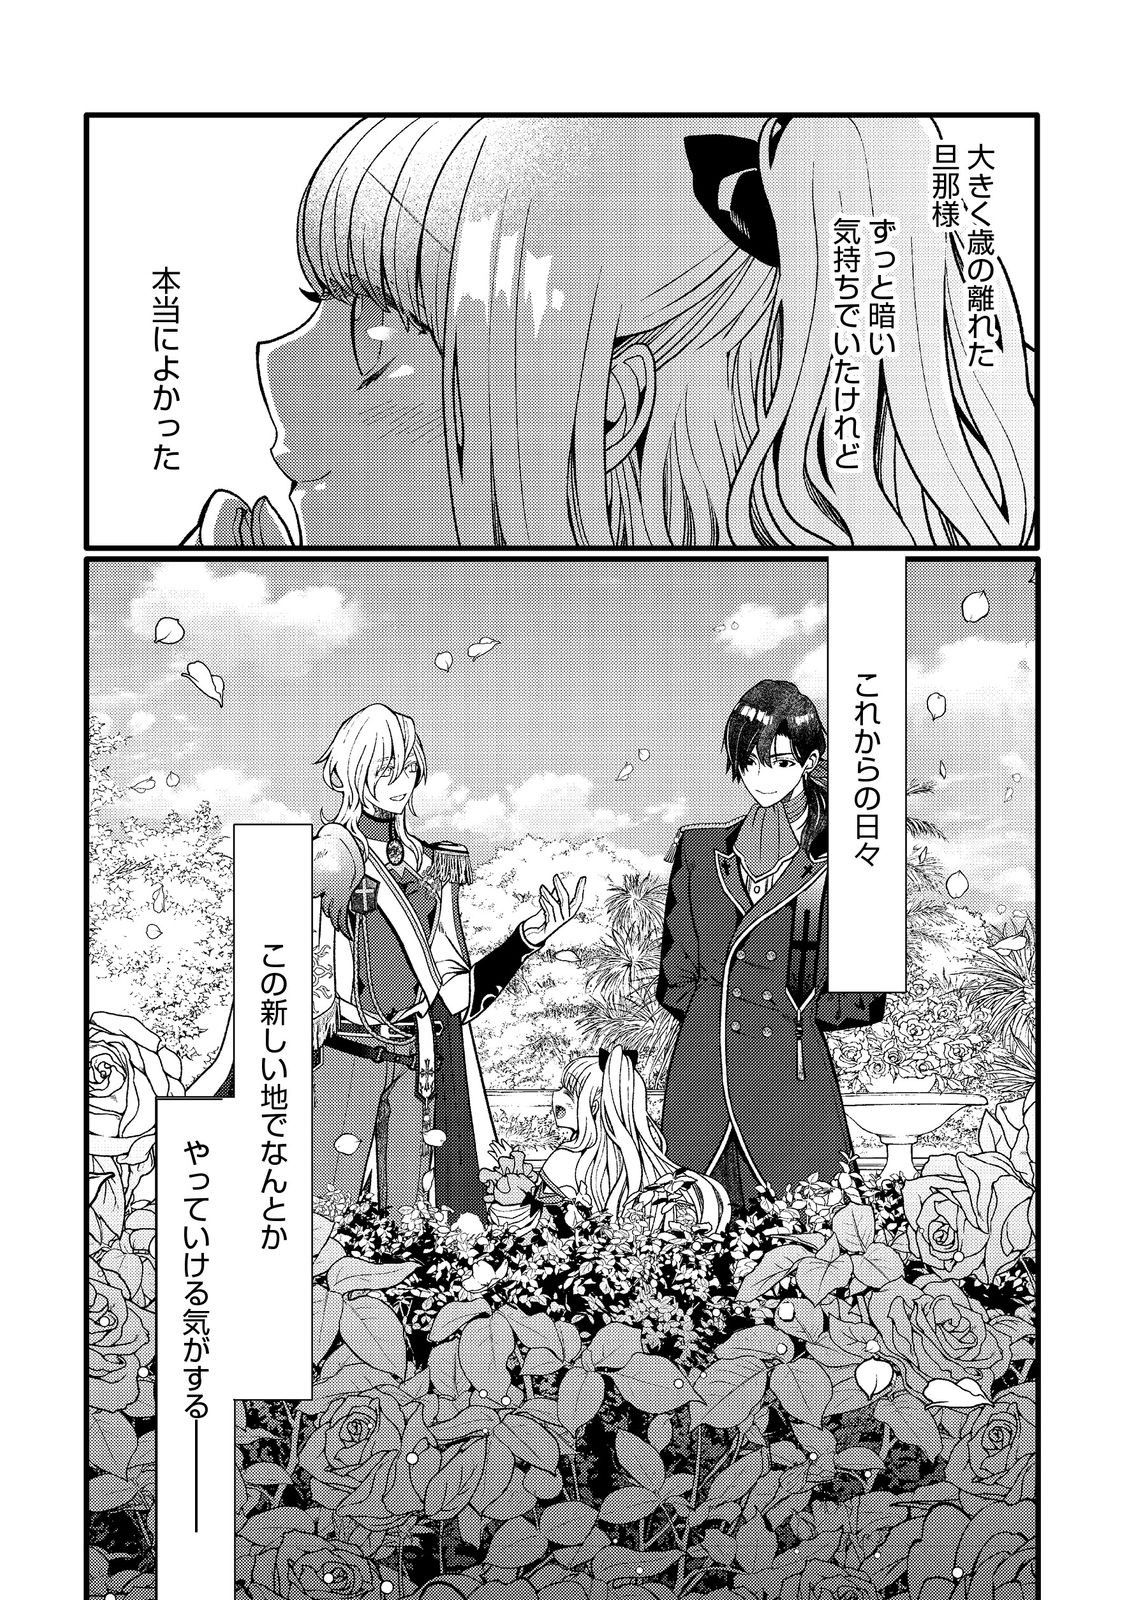 5-sai de, Ryuu no Ou Otoutou Denka no Hanayoume ni Narimashita - Chapter 1 - Page 29